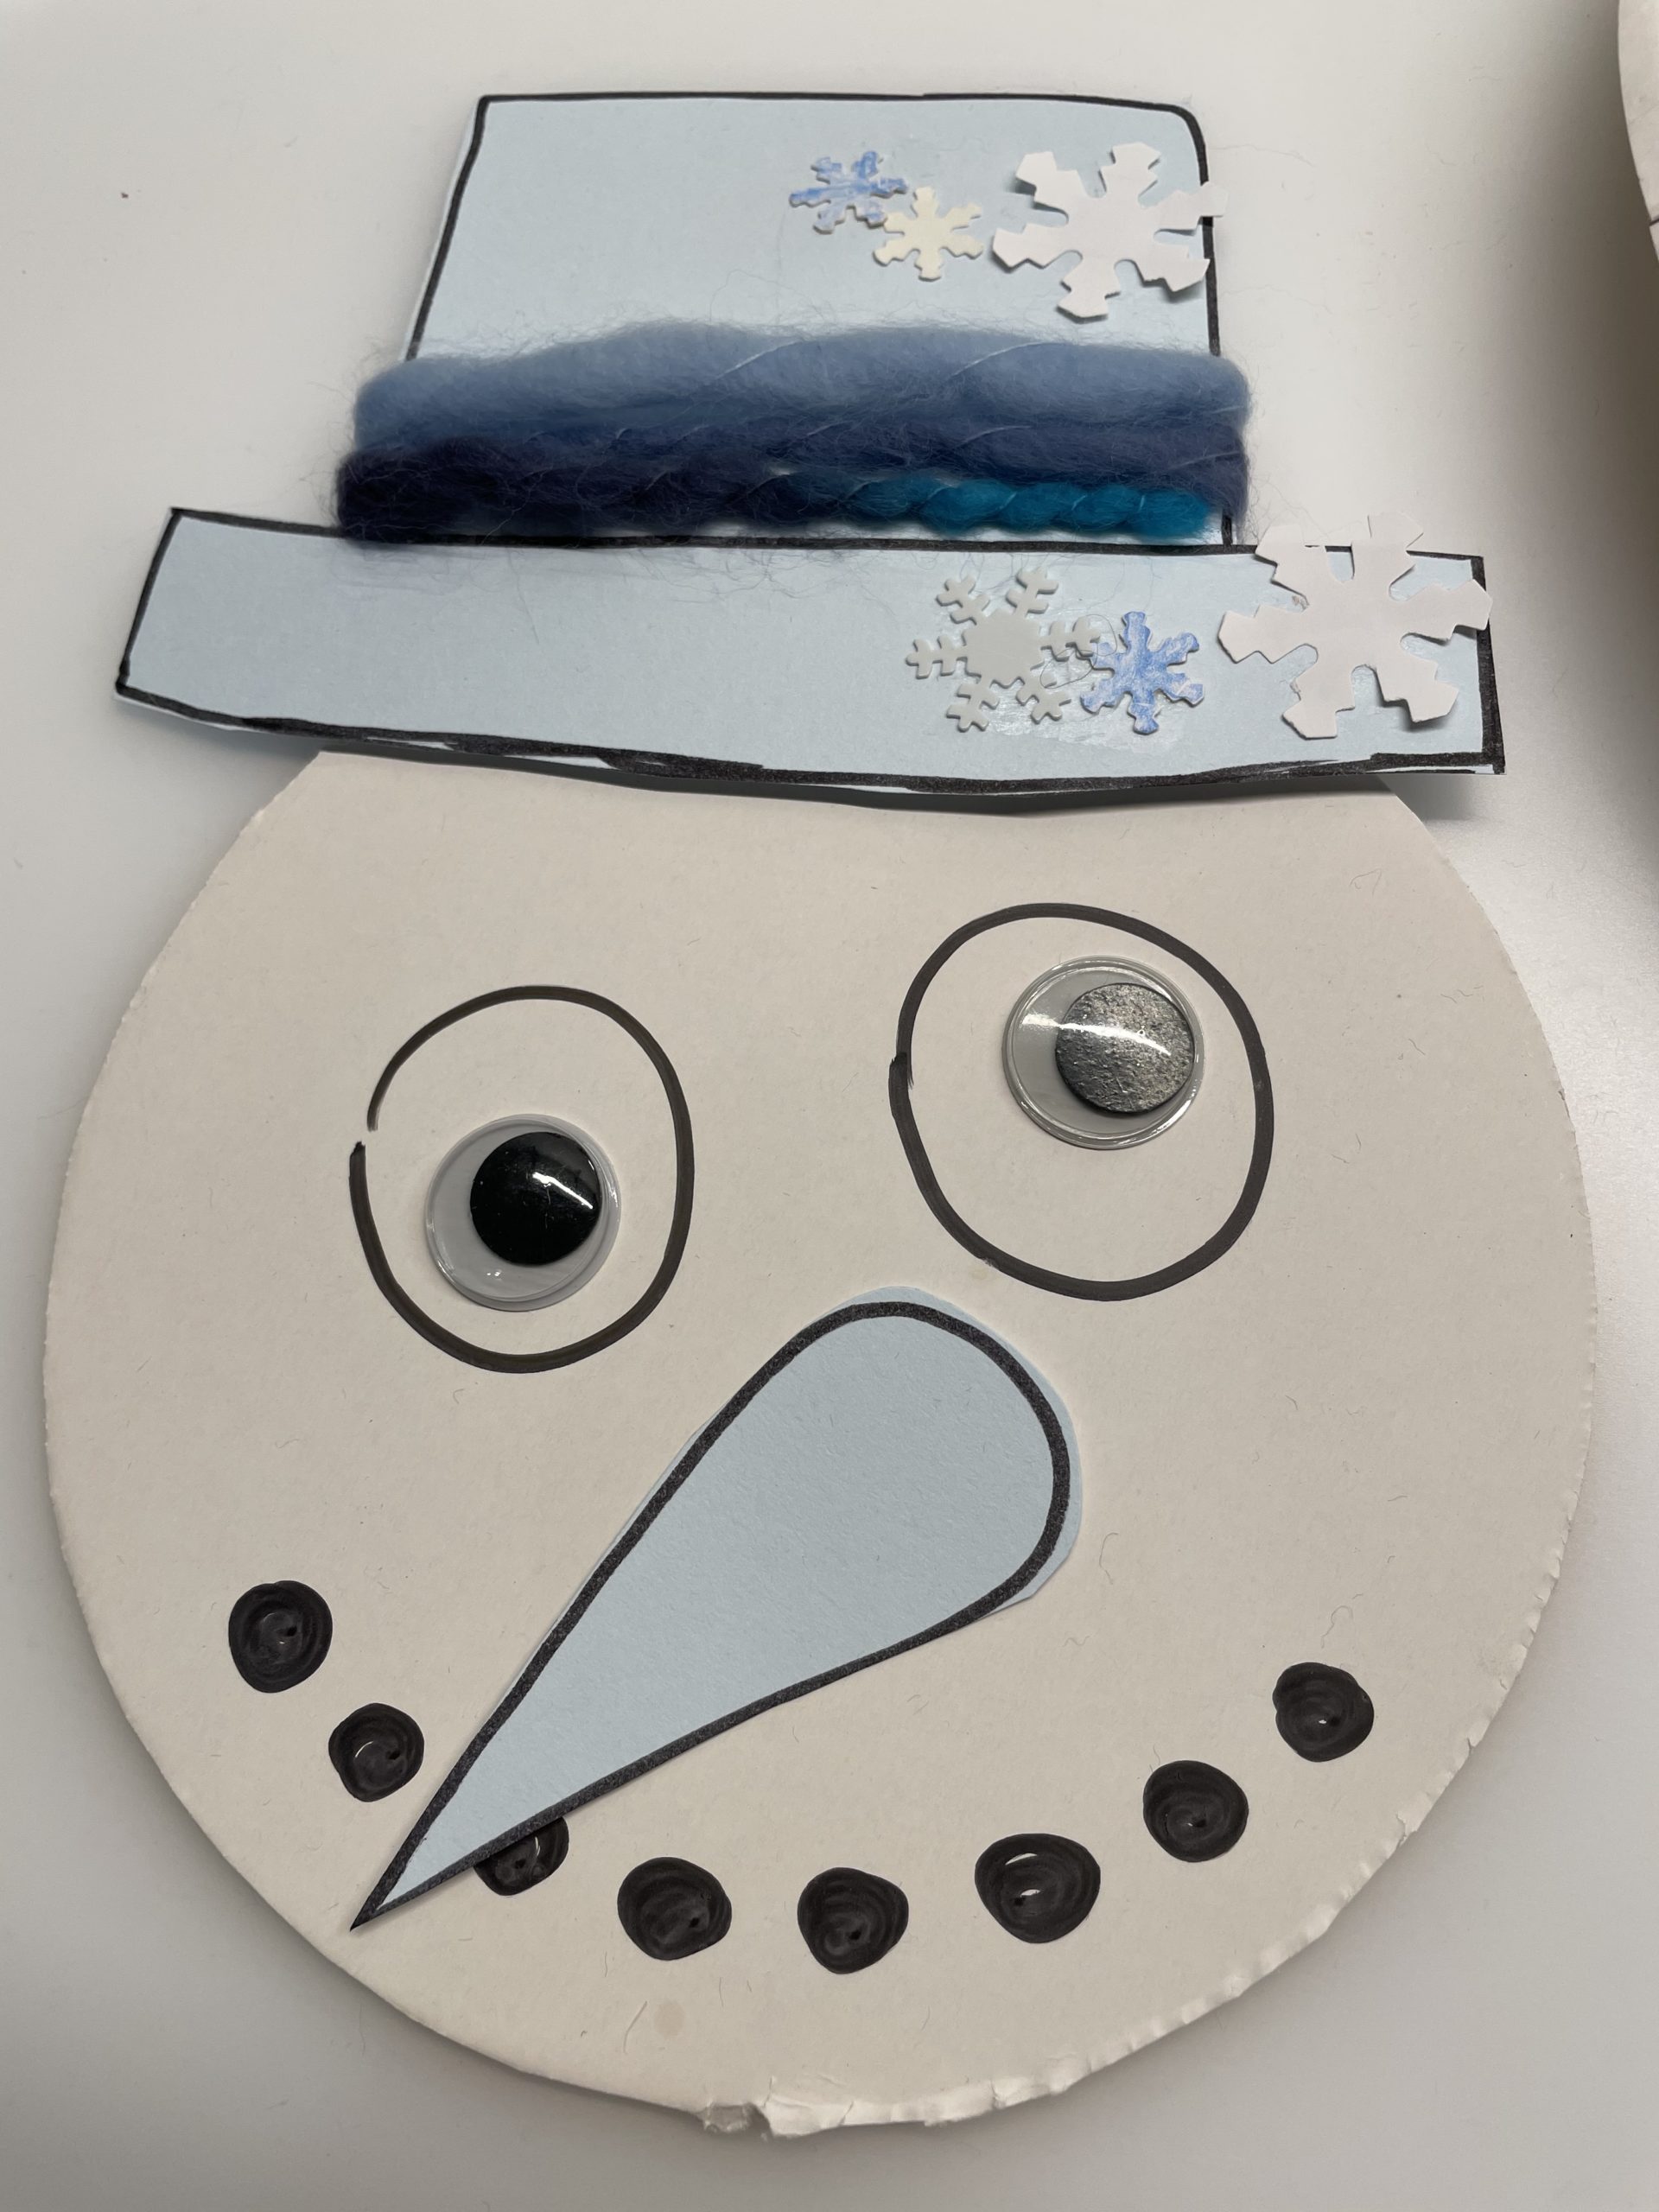 Bild zum Schritt 34 für das Bastel- und DIY-Abenteuer für Kinder: 'Anschließend klebt ihr den Hut auf den Kopf des Schneemannes.'